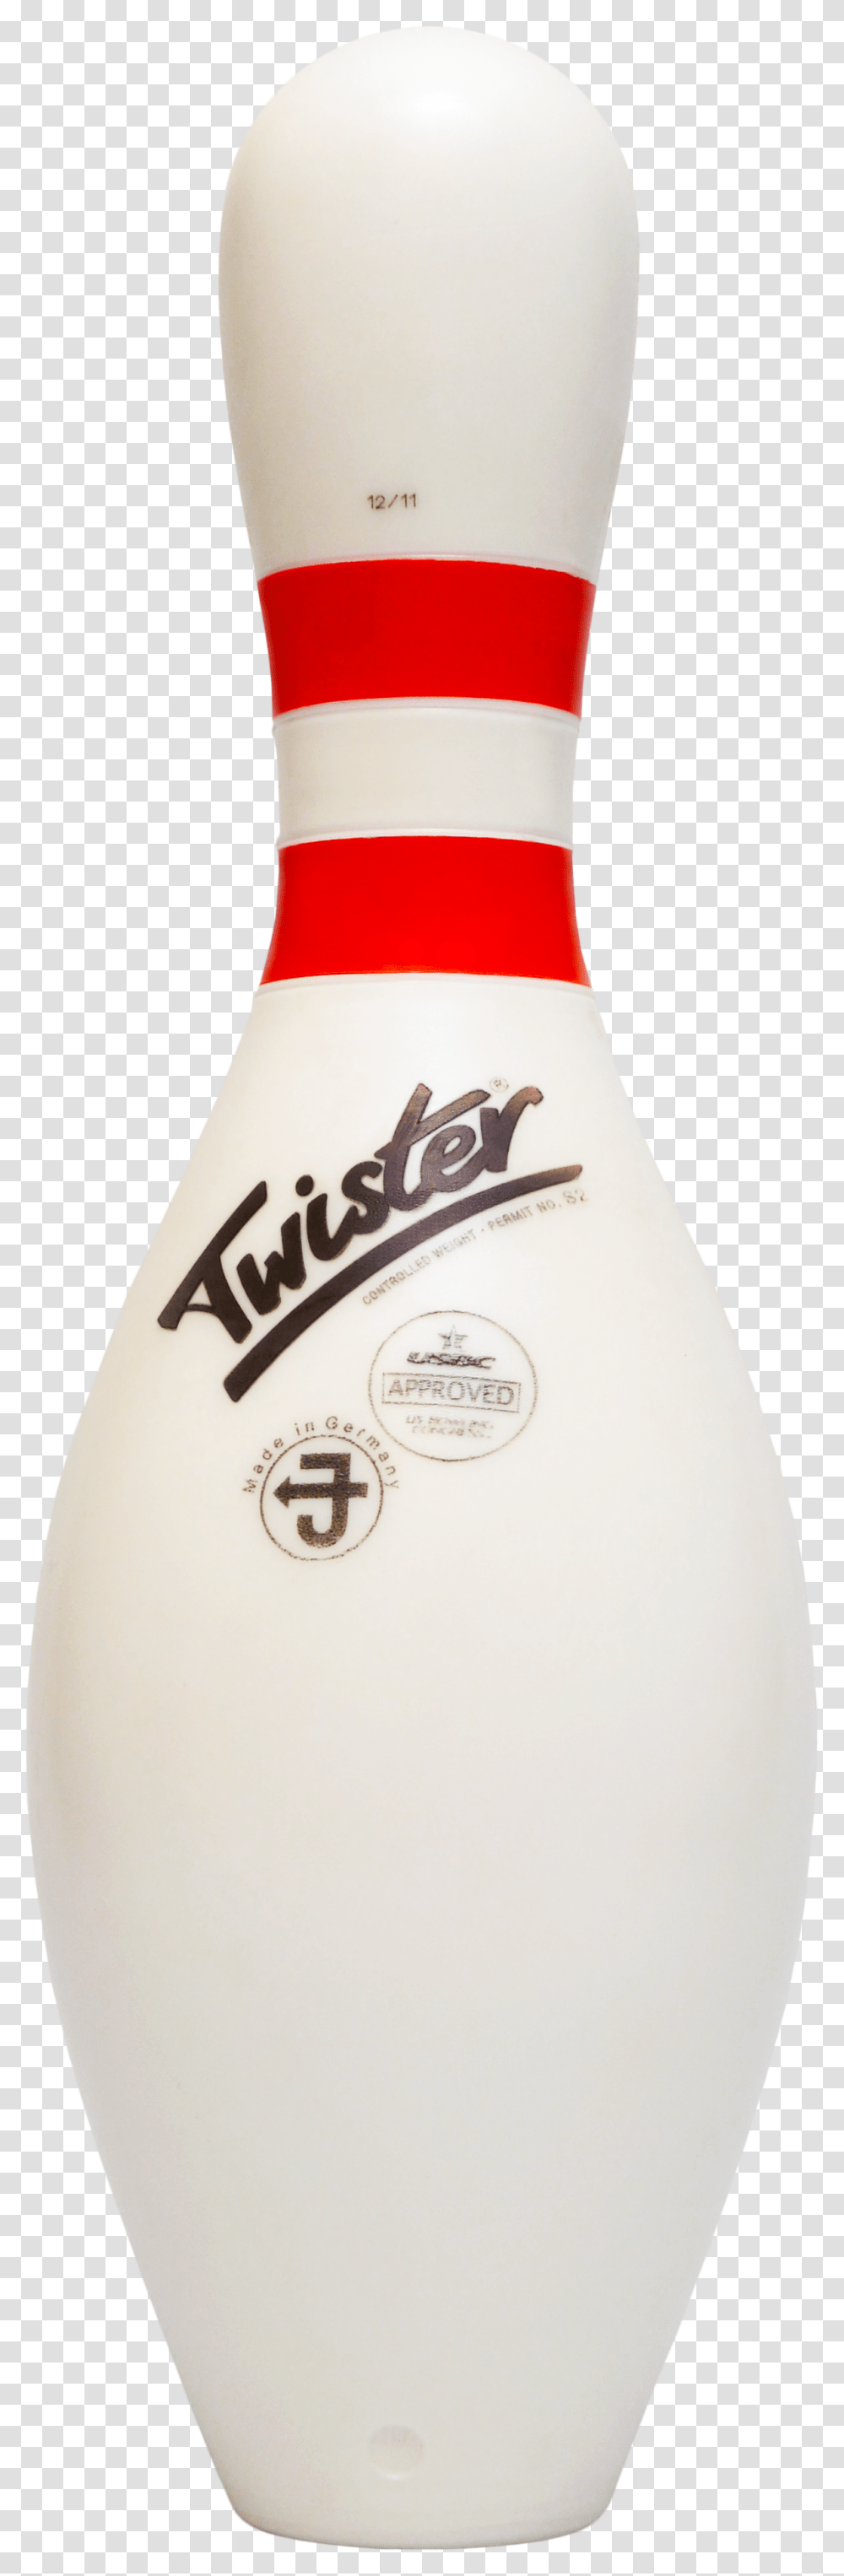 Twister Bowling Pins Home, Milk, Beverage, Drink, Bottle Transparent Png